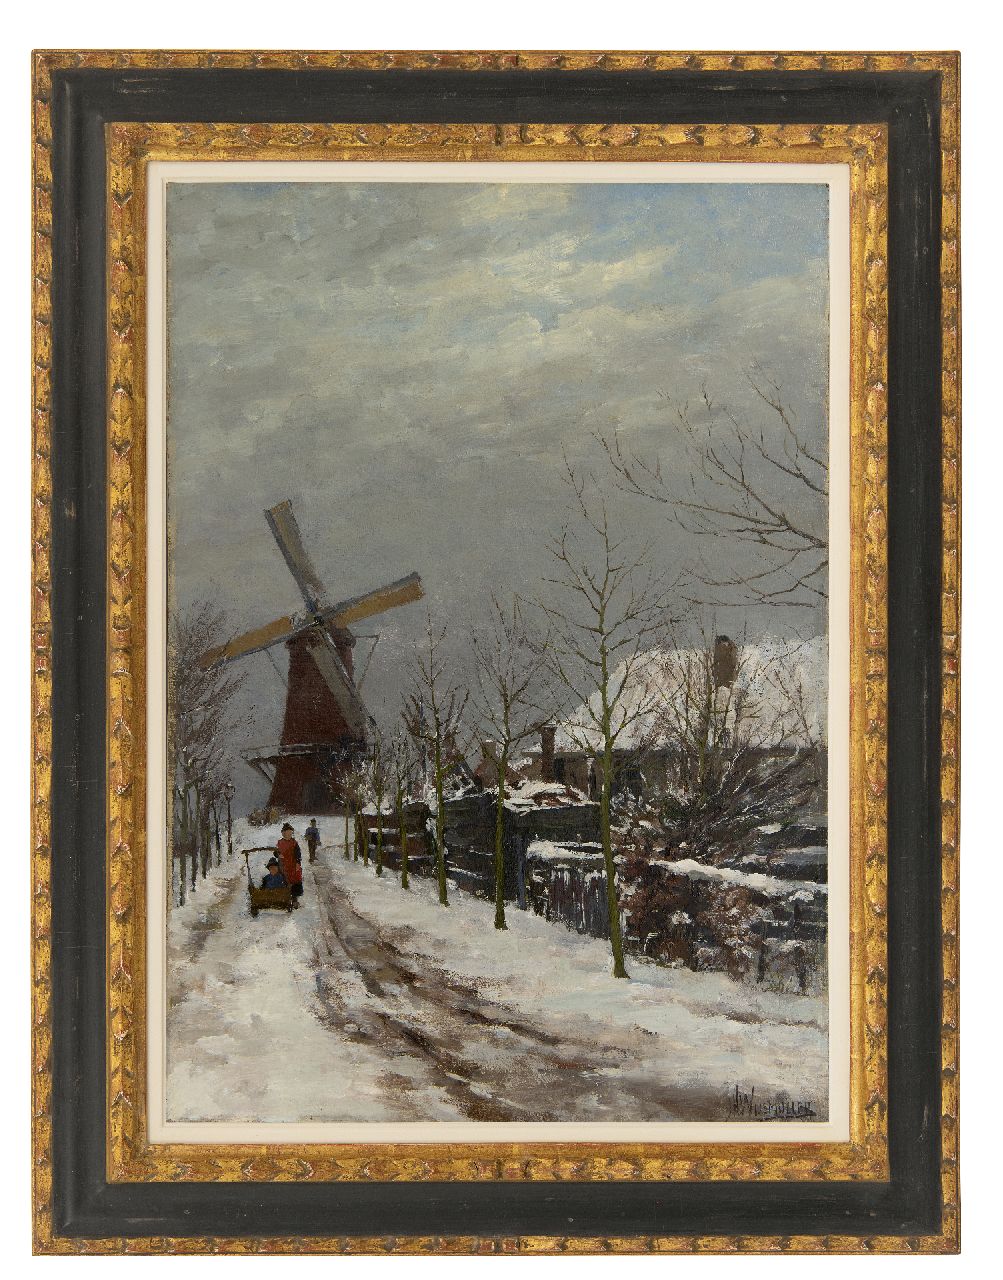 Wijsmuller J.H.  | Jan Hillebrand Wijsmuller | Schilderijen te koop aangeboden | Kinderen in de sneeuw bij een molen, olieverf op doek 57,3 x 41,0 cm, gesigneerd rechtsonder